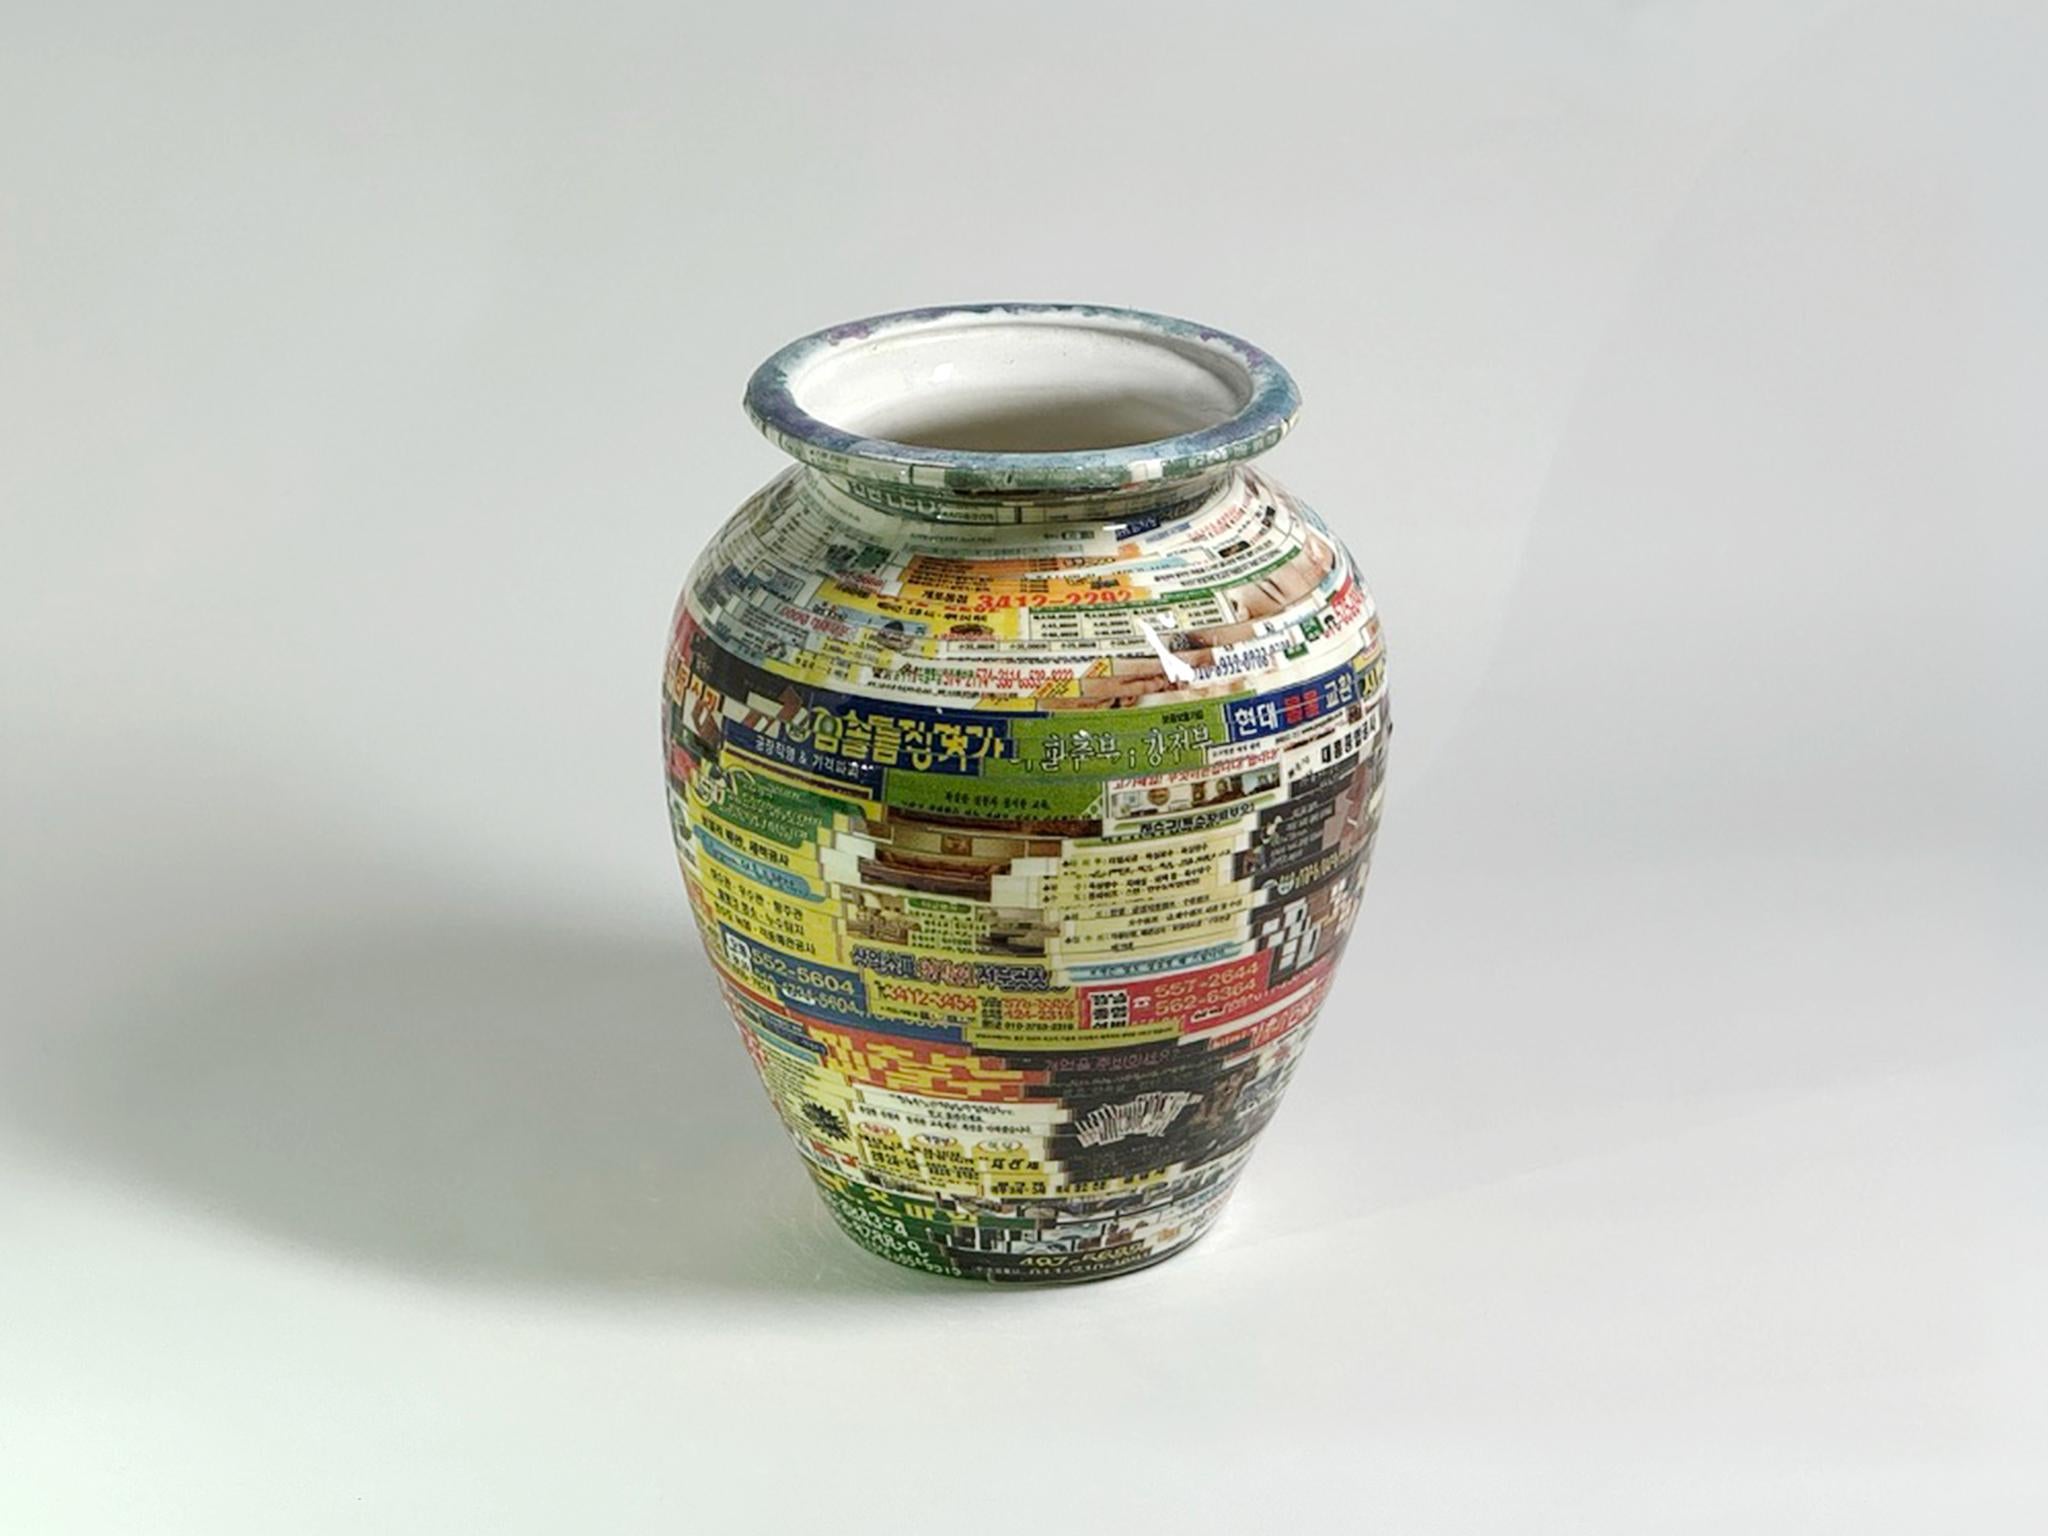 Jjirasi-Vase #04, 2021 von Yongwon Noh
Aus der Serie Jjirasi 
Keramik, PVC-Aufkleber und Harz
Größe: 6,6 Zoll. H x 5.5 in. B x 5,5 Zoll (ca. 13,5 cm) D
Gewicht: 3kg Unverpackt
Einzigartiges Stück
Signatur auf dem Boden der Vase

Jjirasi Vase